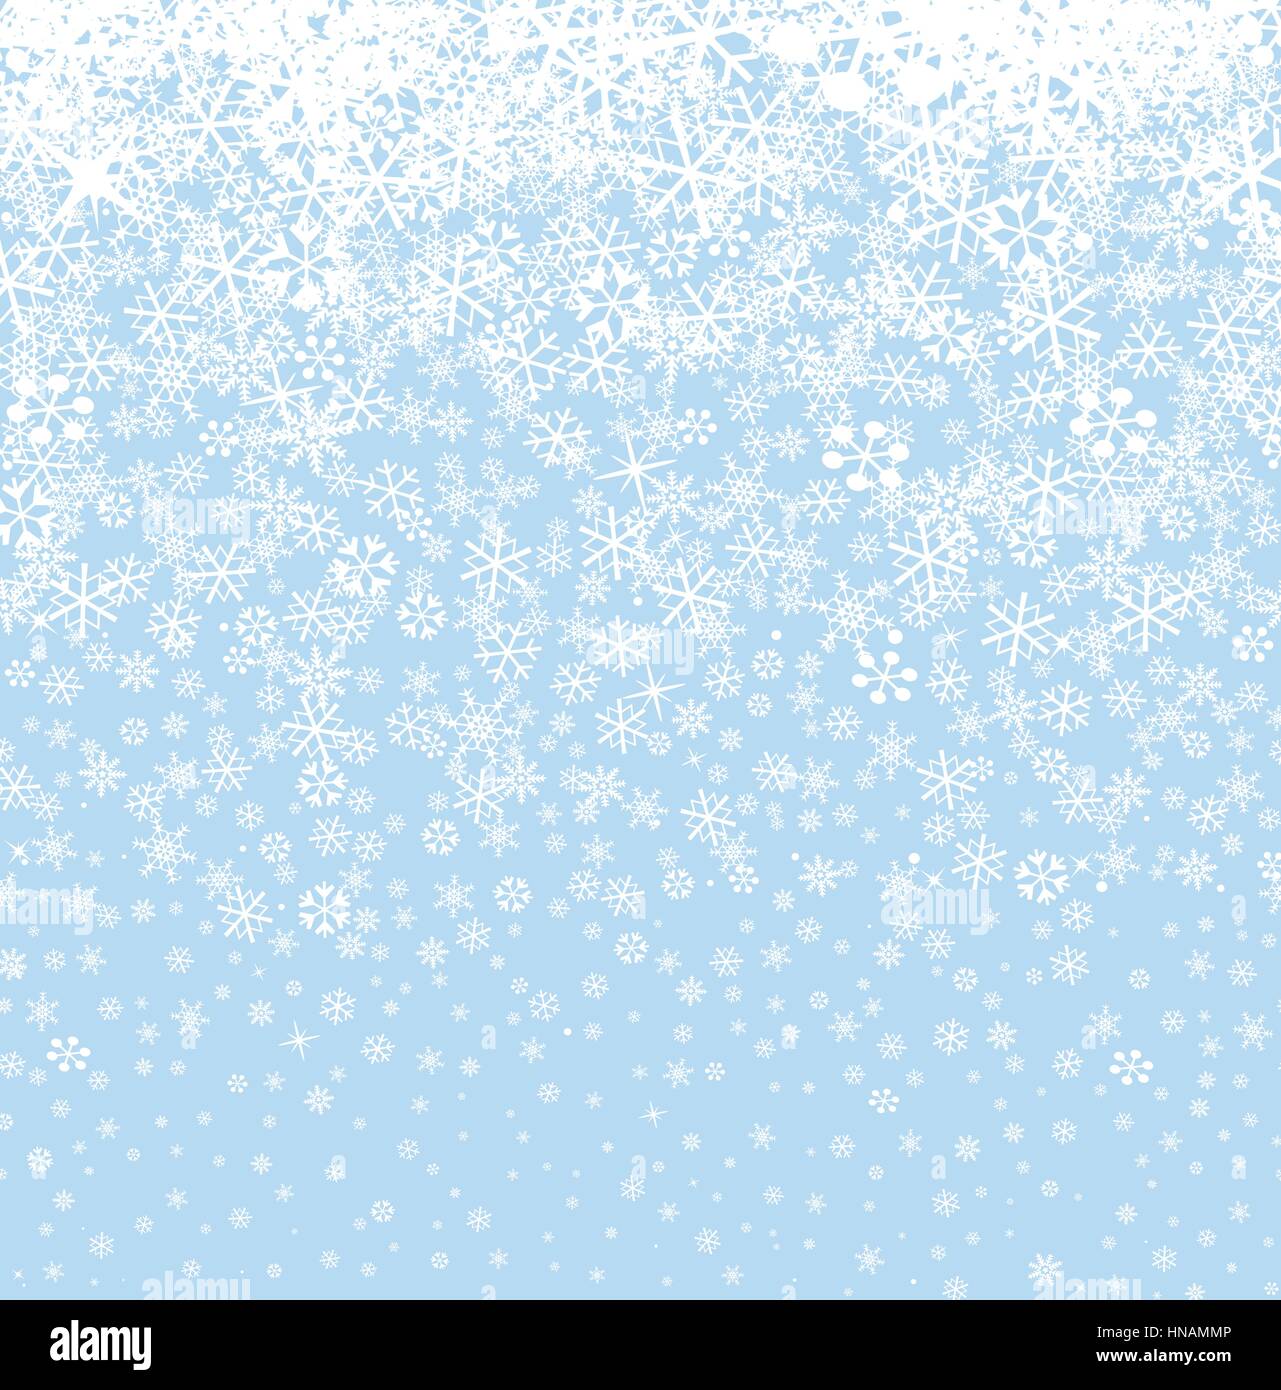 Sfondo di neve. i fiocchi di neve seamless pattern. inverno nevoso confine seamless sfondo. Illustrazione Vettoriale